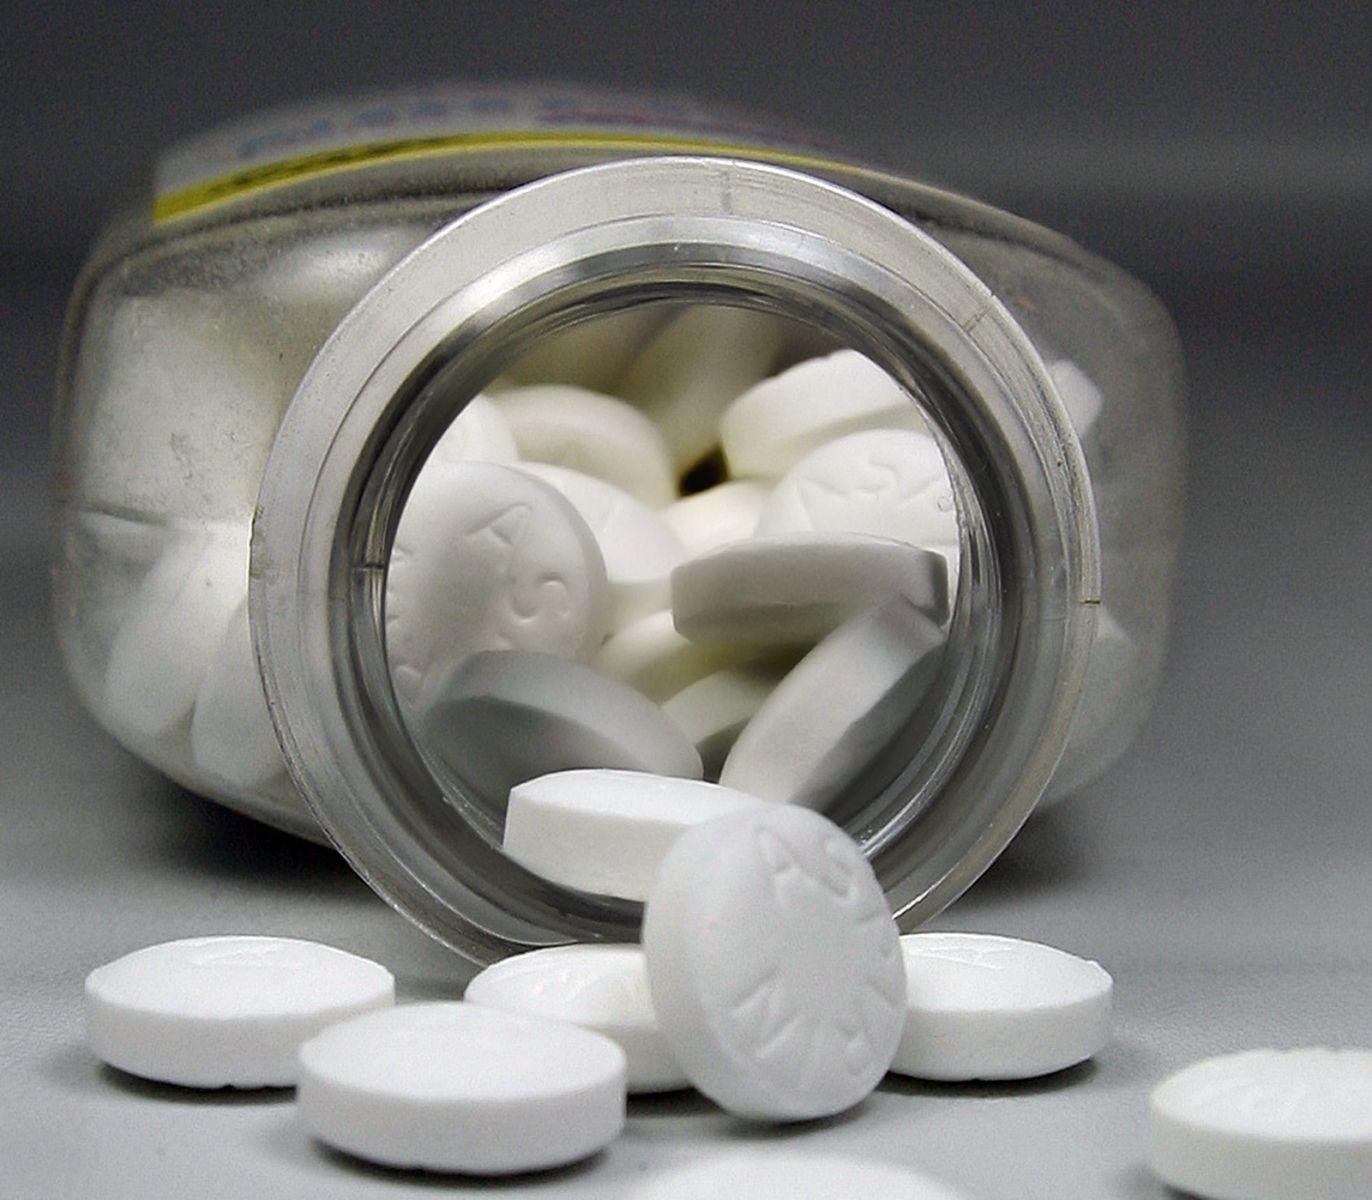 Najmanje 2000 nasumice odabranih pacijenata trebalo bi primati dnevno 150 mg aspirina uz uobičajeni režim - Avaz